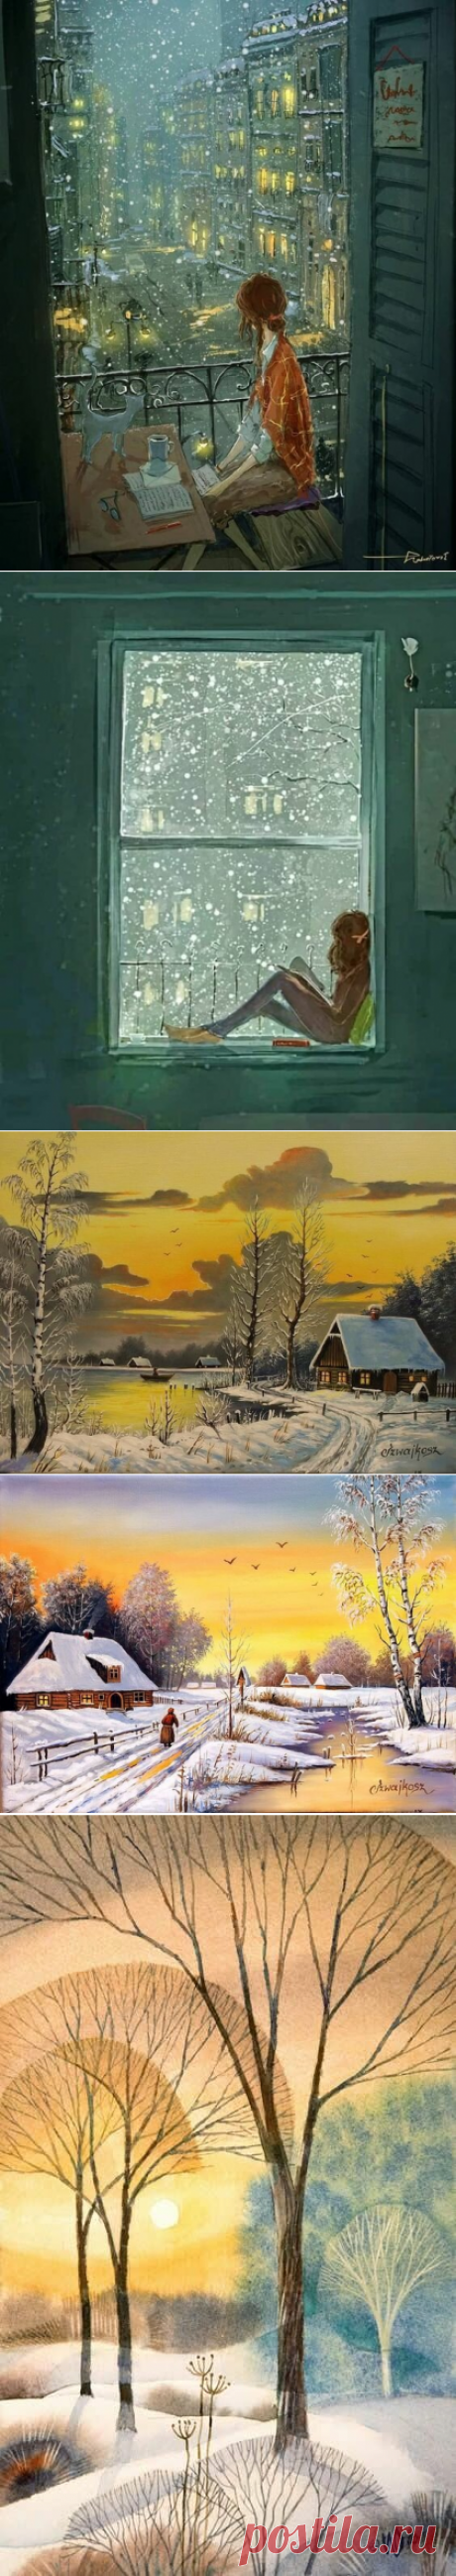 Уютная зима в картинках, или жизнь после зимних каникул | Творческий уголок для души | Яндекс Дзен